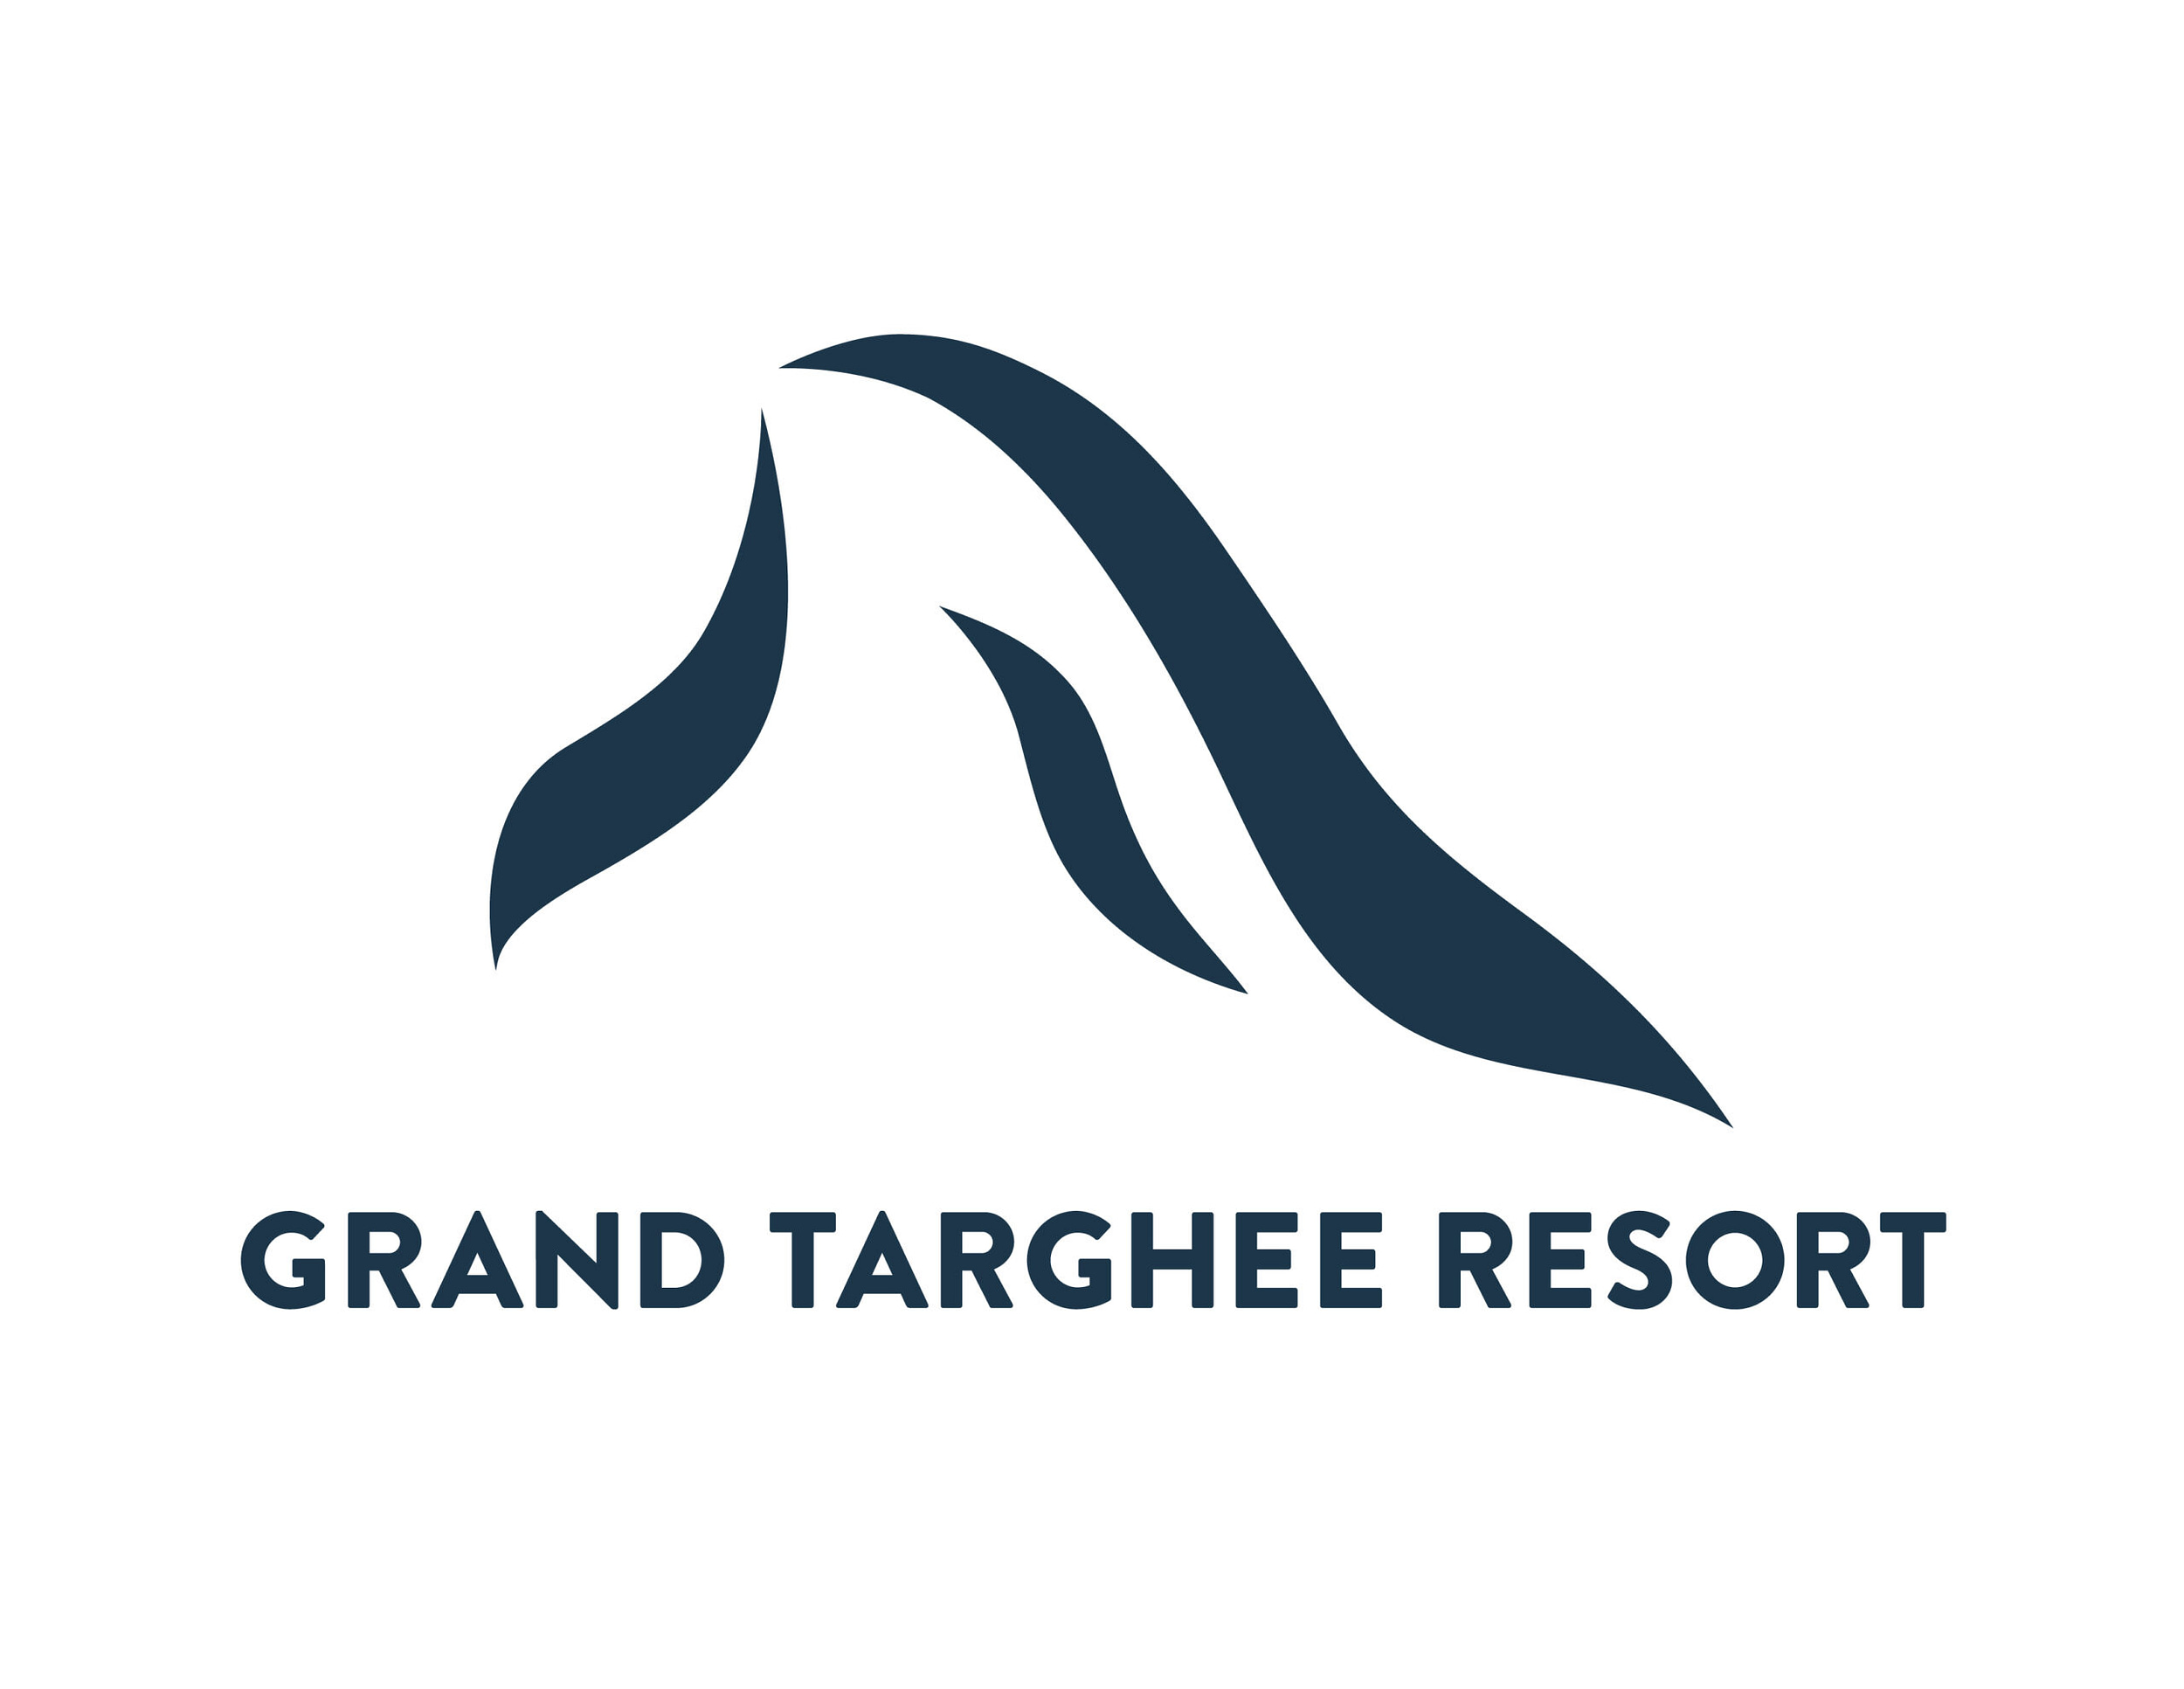 Complejo turístico de Grand Targhee